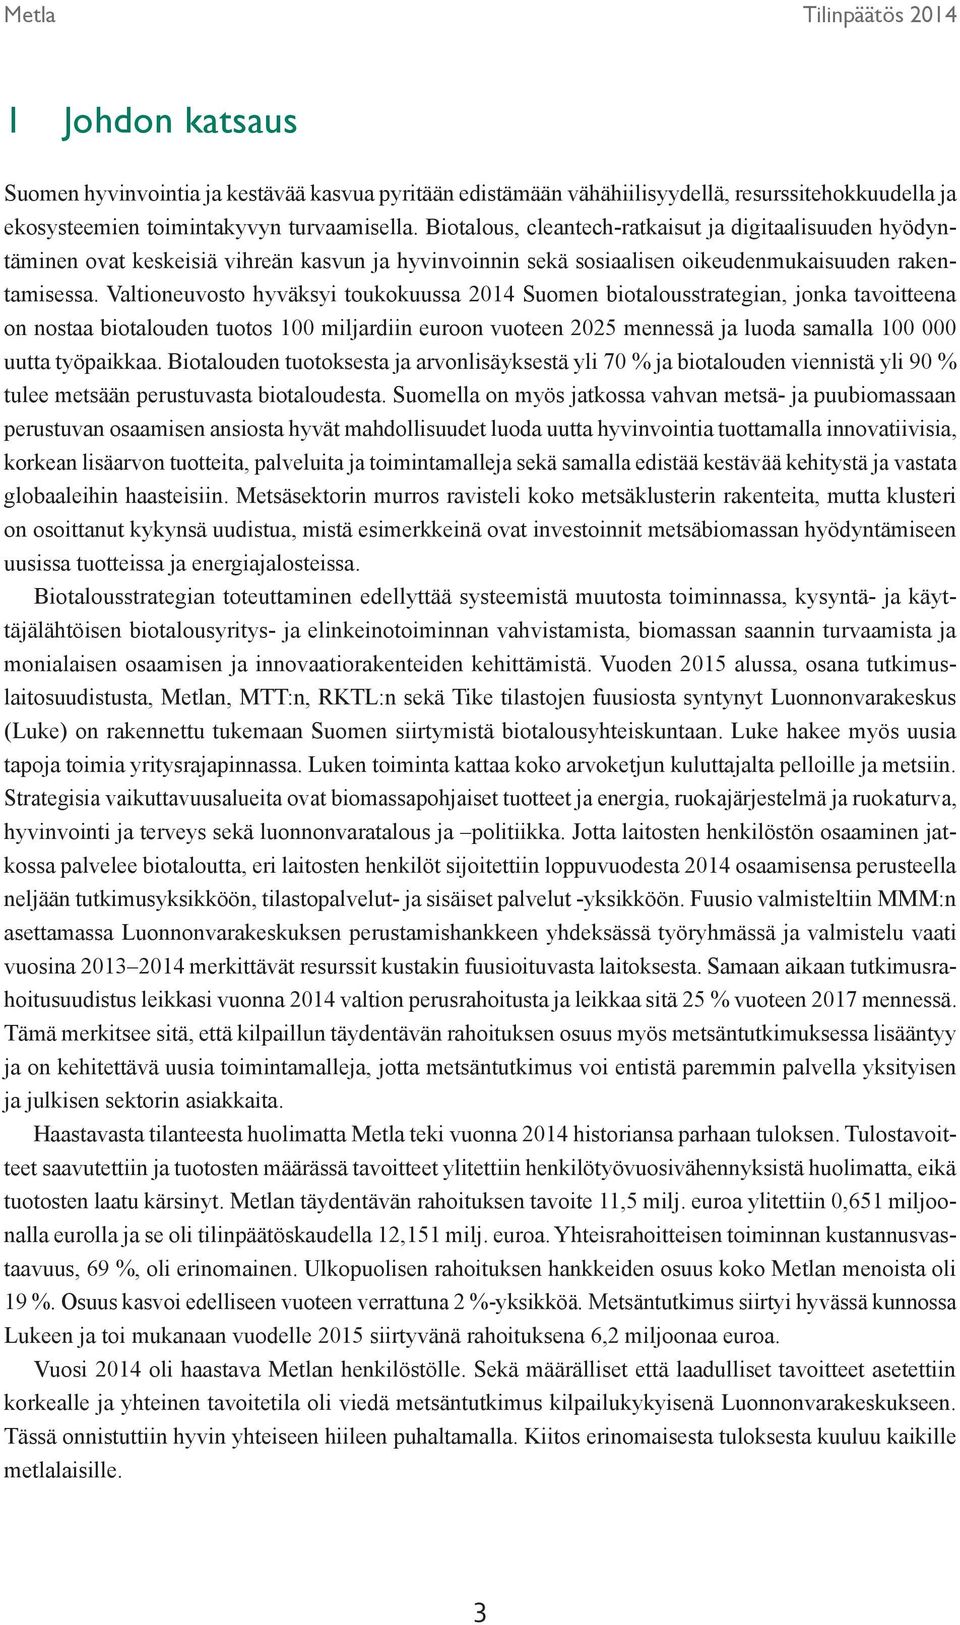 Valtioneuvosto hyväksyi toukokuussa 2014 Suomen biotalousstrategian, jonka tavoitteena on nostaa biotalouden tuotos 100 miljardiin euroon vuoteen 2025 mennessä ja luoda samalla 100 000 uutta